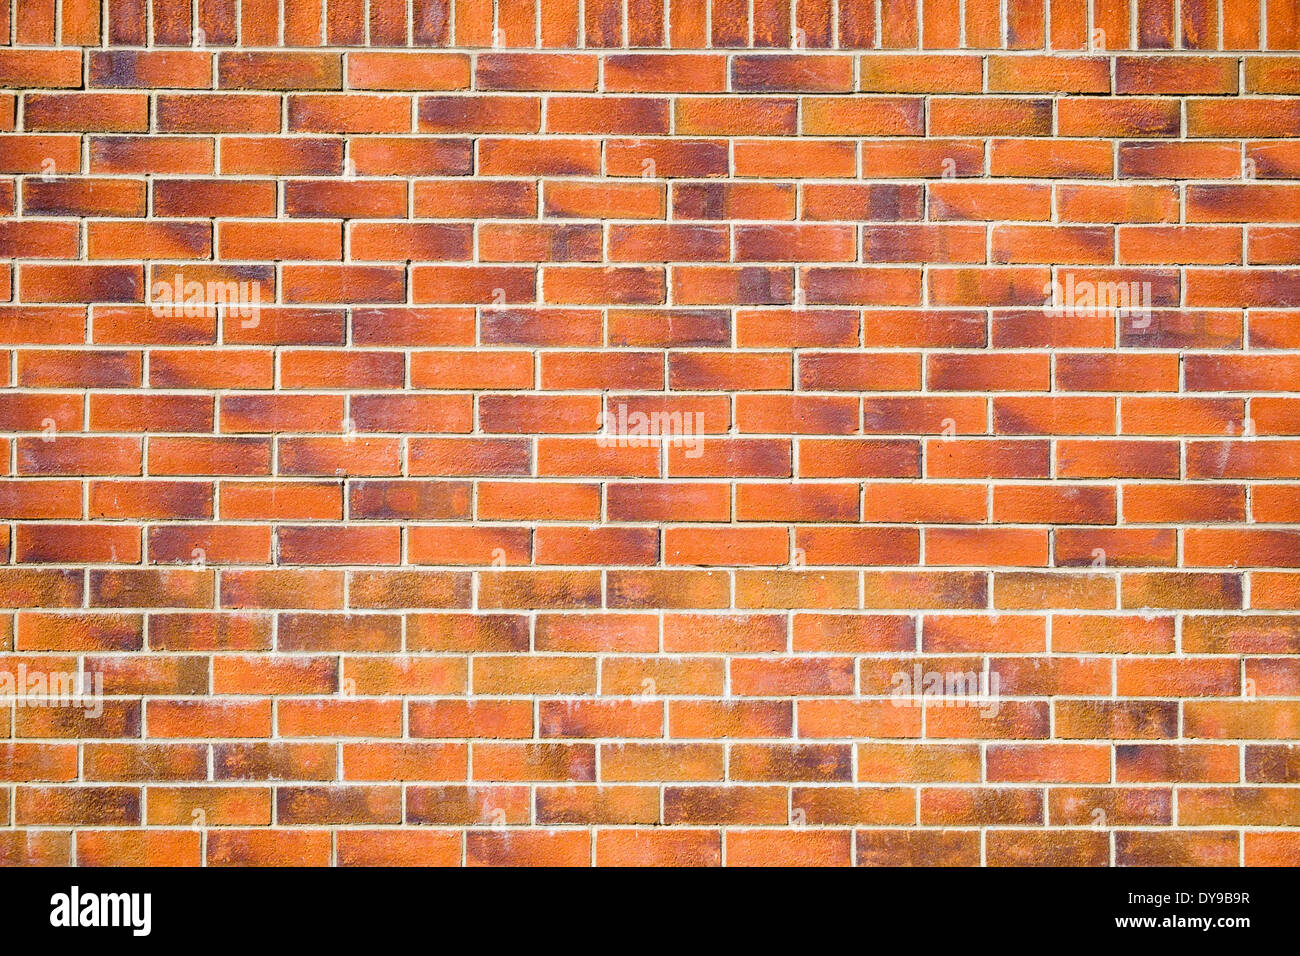 Plano simple pared de ladrillo rojo de fondo hecha de ladrillos y mortero. Reino Unido de Gran Bretaña Foto de stock